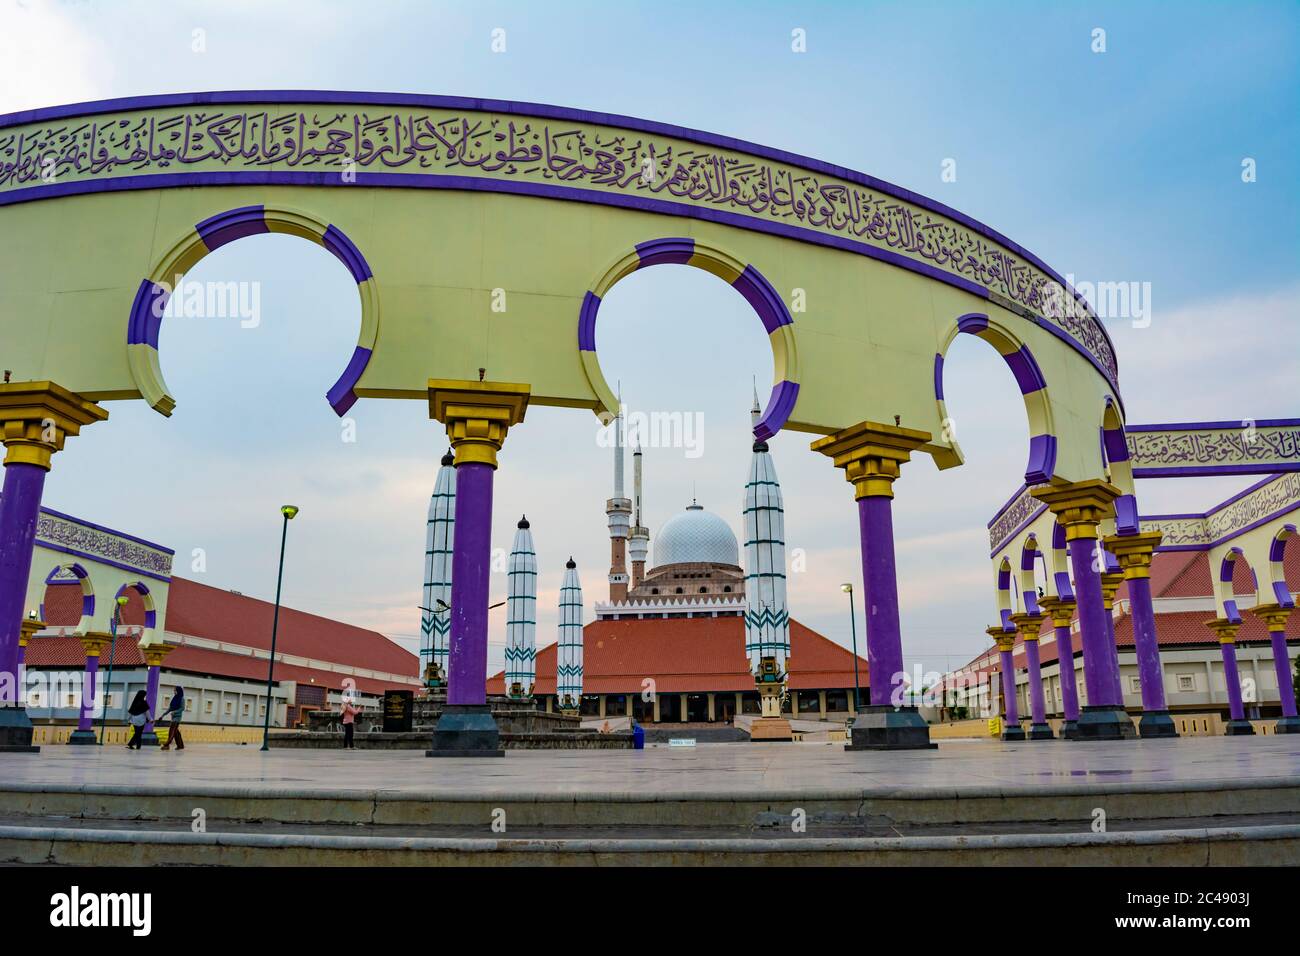 Semarang, Indonésie - VERS novembre 2019 : l'extérieur de Masjid Agung Jawa Tengah (Grande Mosquée de Java centrale). Le mur avec la calligraphie arabe et ar Banque D'Images